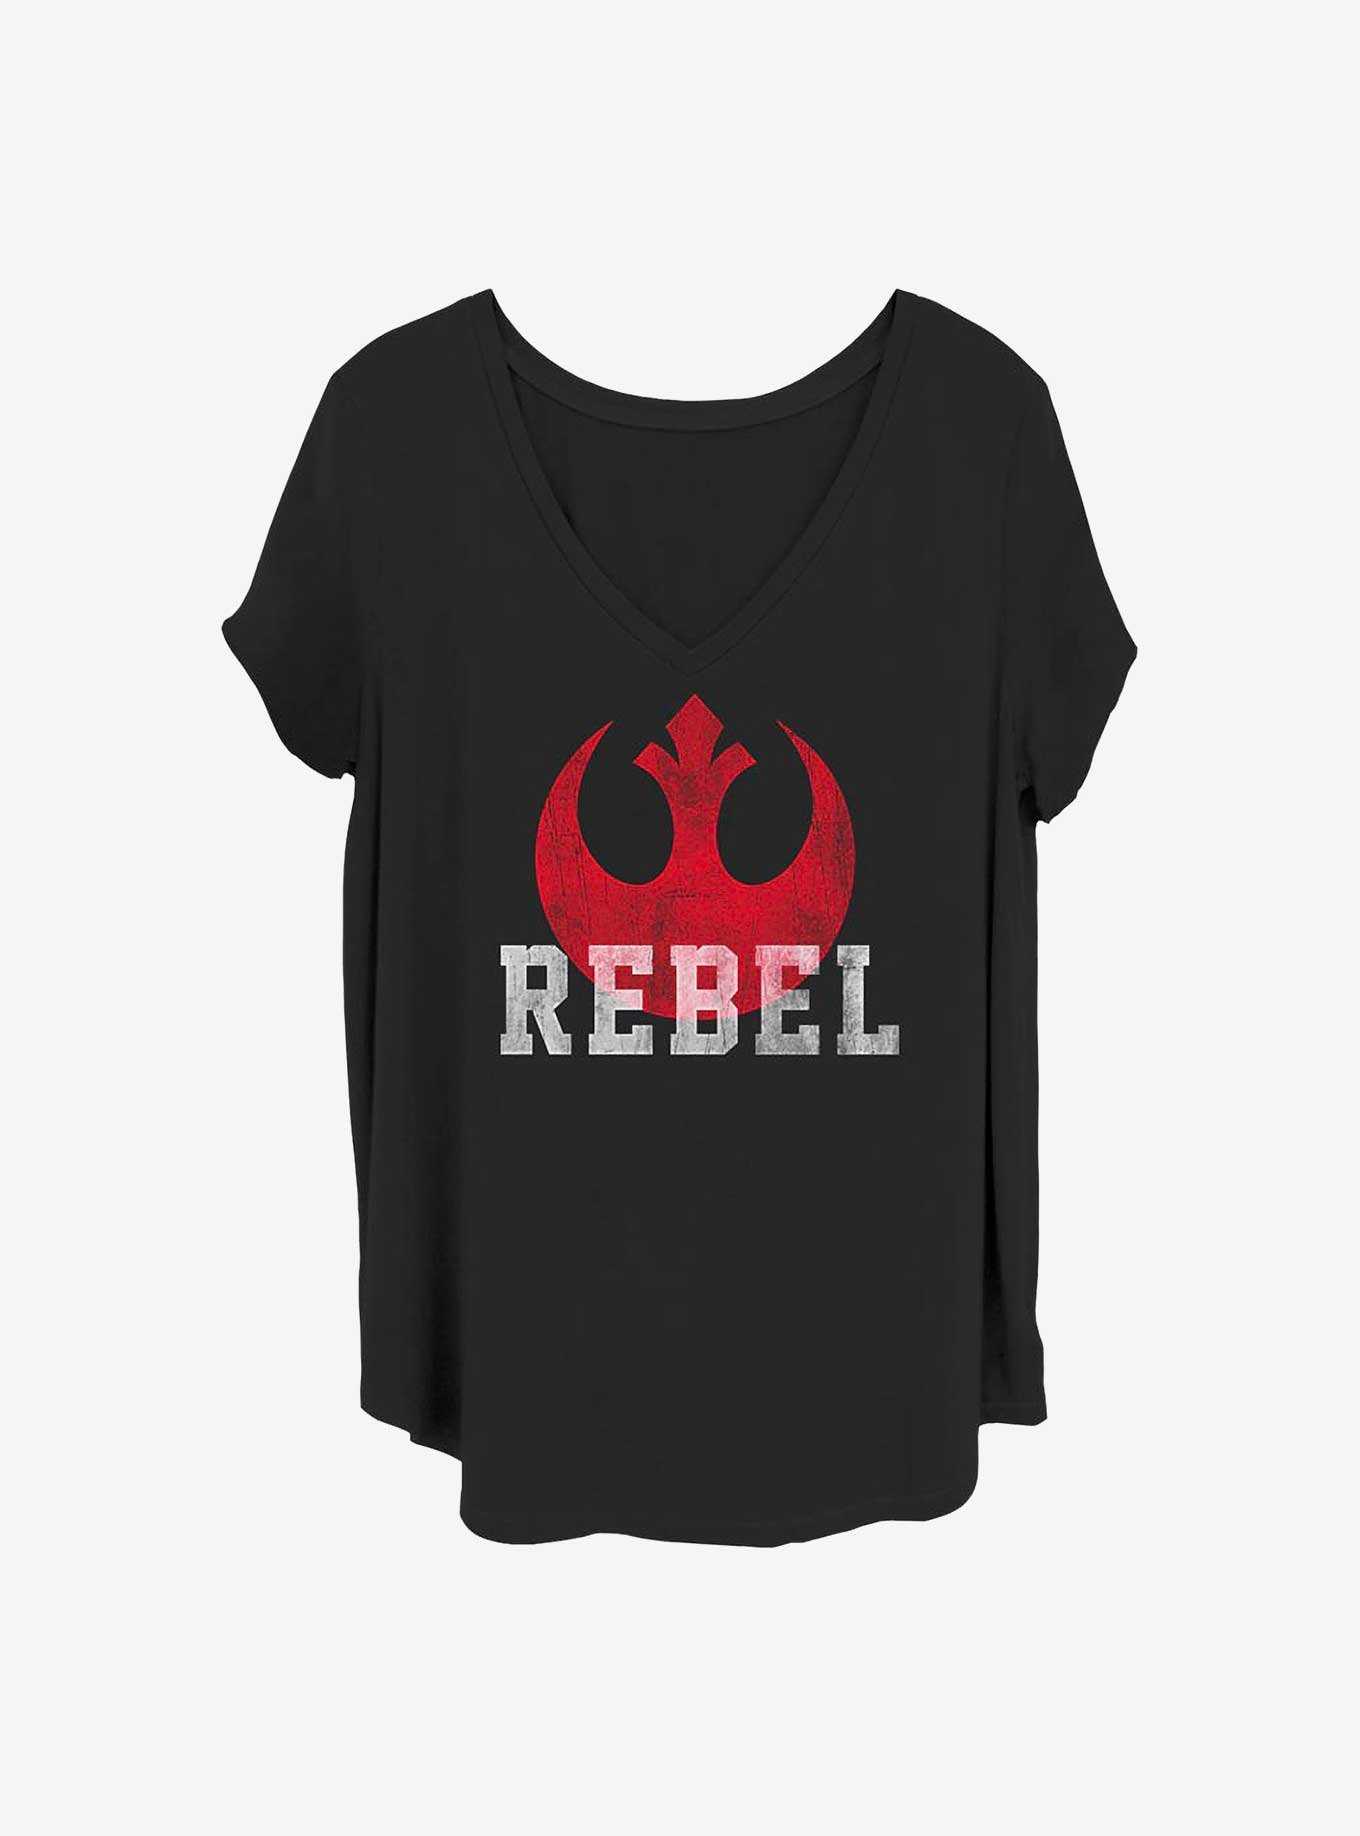 Star Wars: Episode VII - The Force Awakens Rebel Girls T-Shirt Plus Size, , hi-res